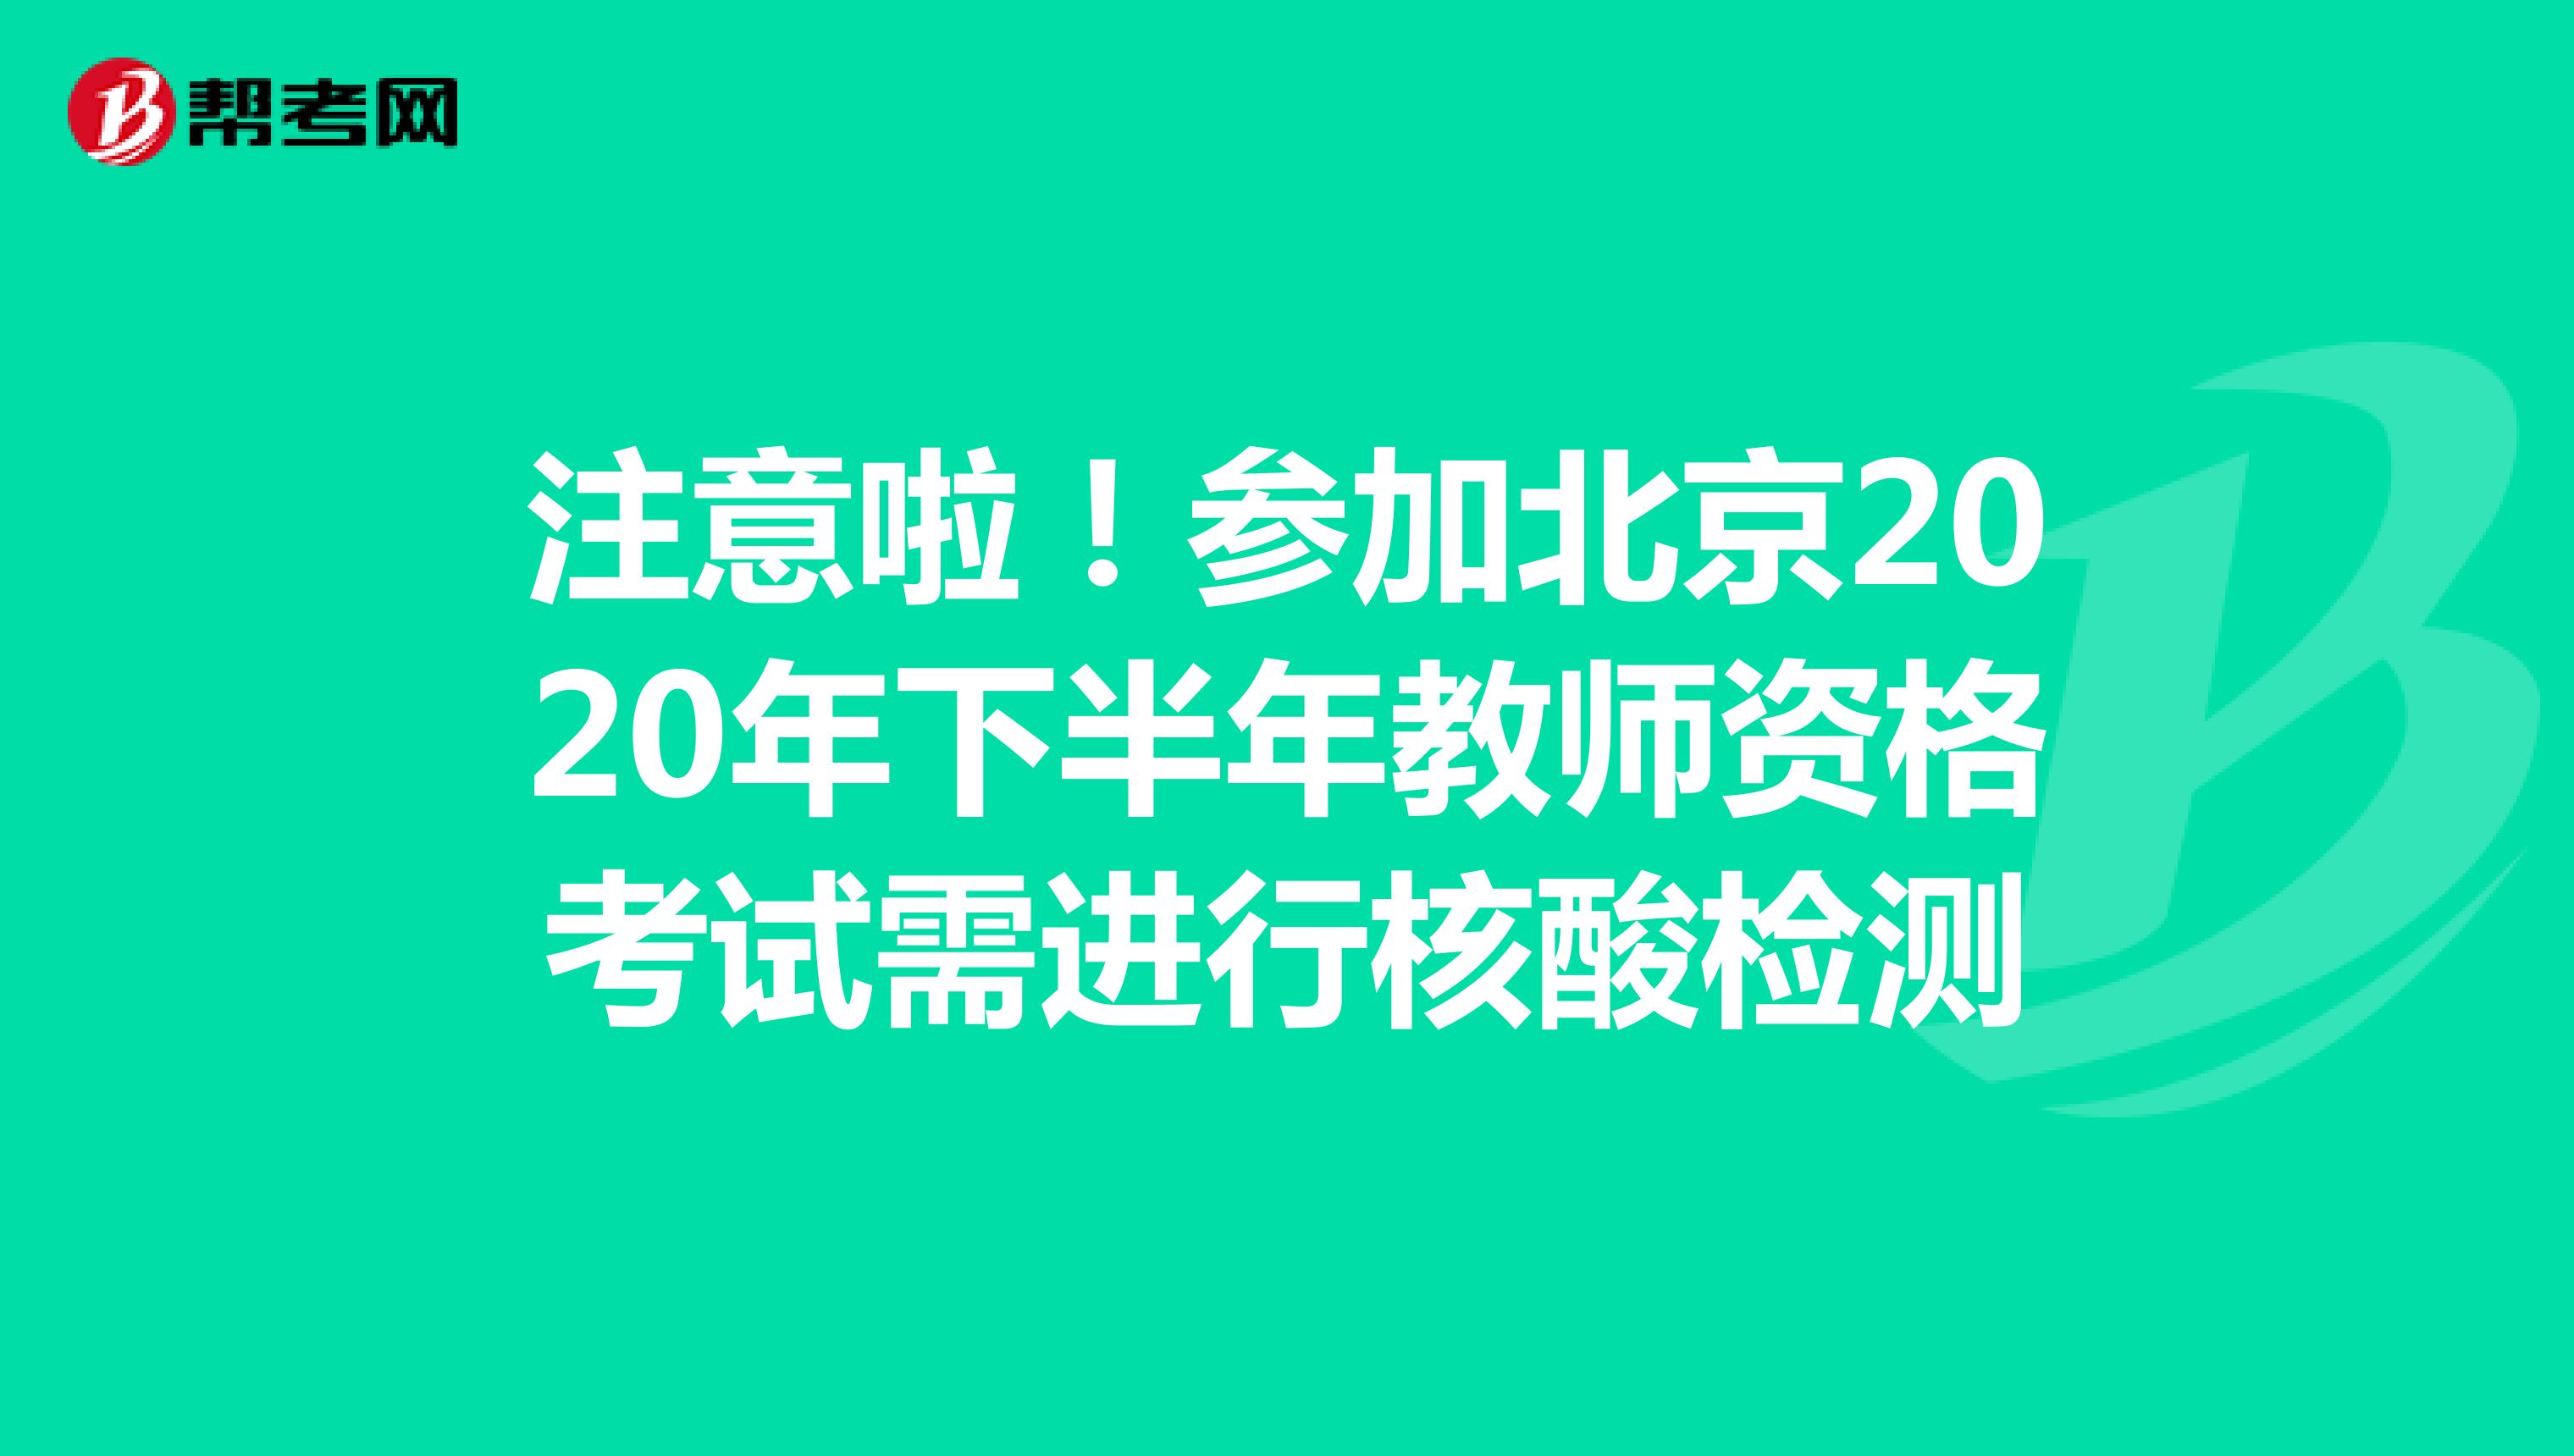 注意啦！参加北京2020年下半年教师资格考试需进行核酸检测